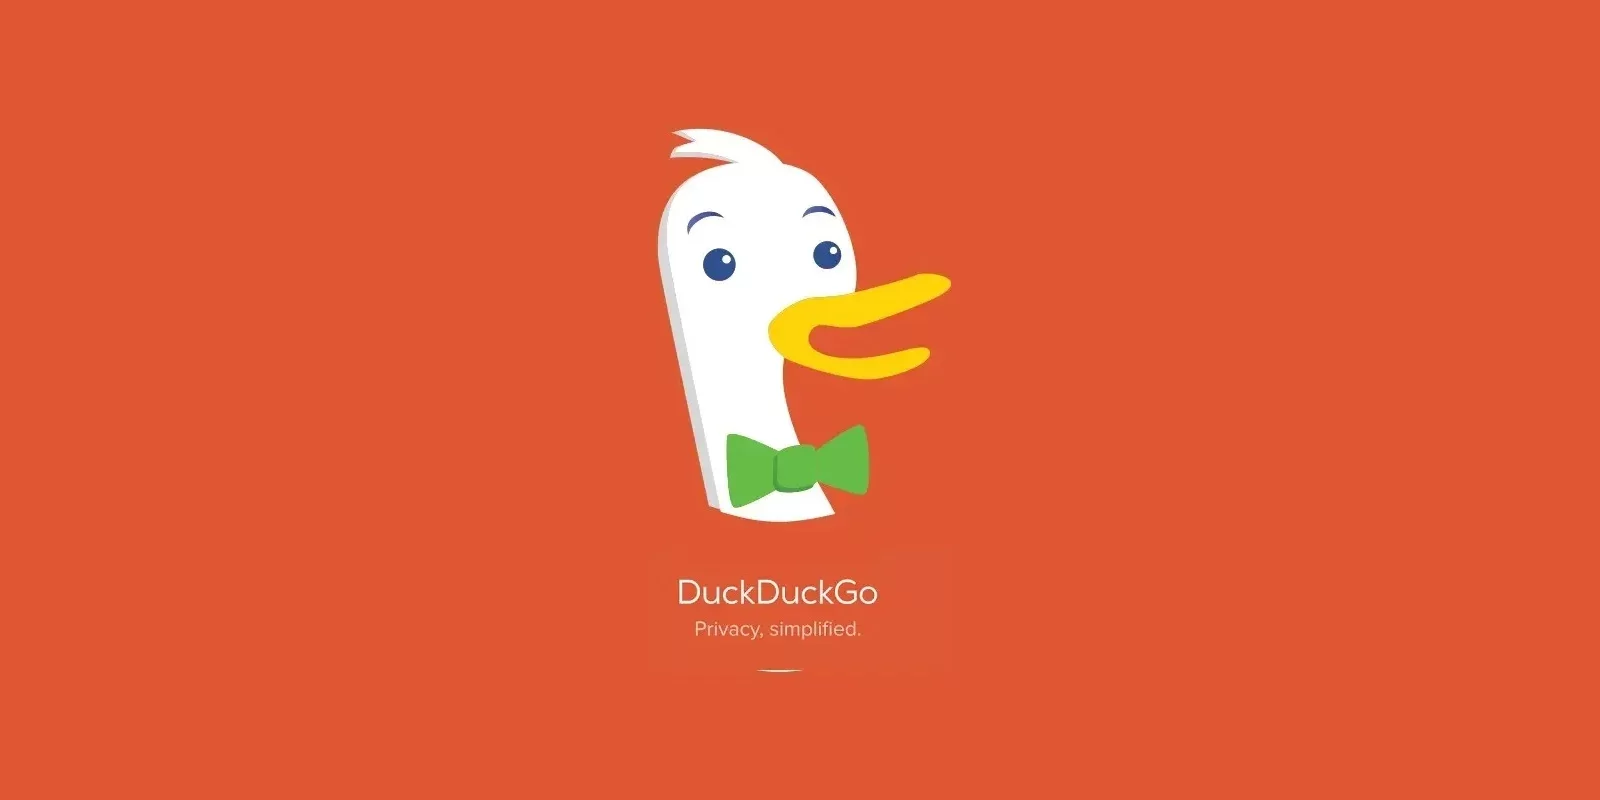  DuckDuckGo foi lançado em sua versão 0.30 (beta) para a plataforma Mac em outubro de 2022